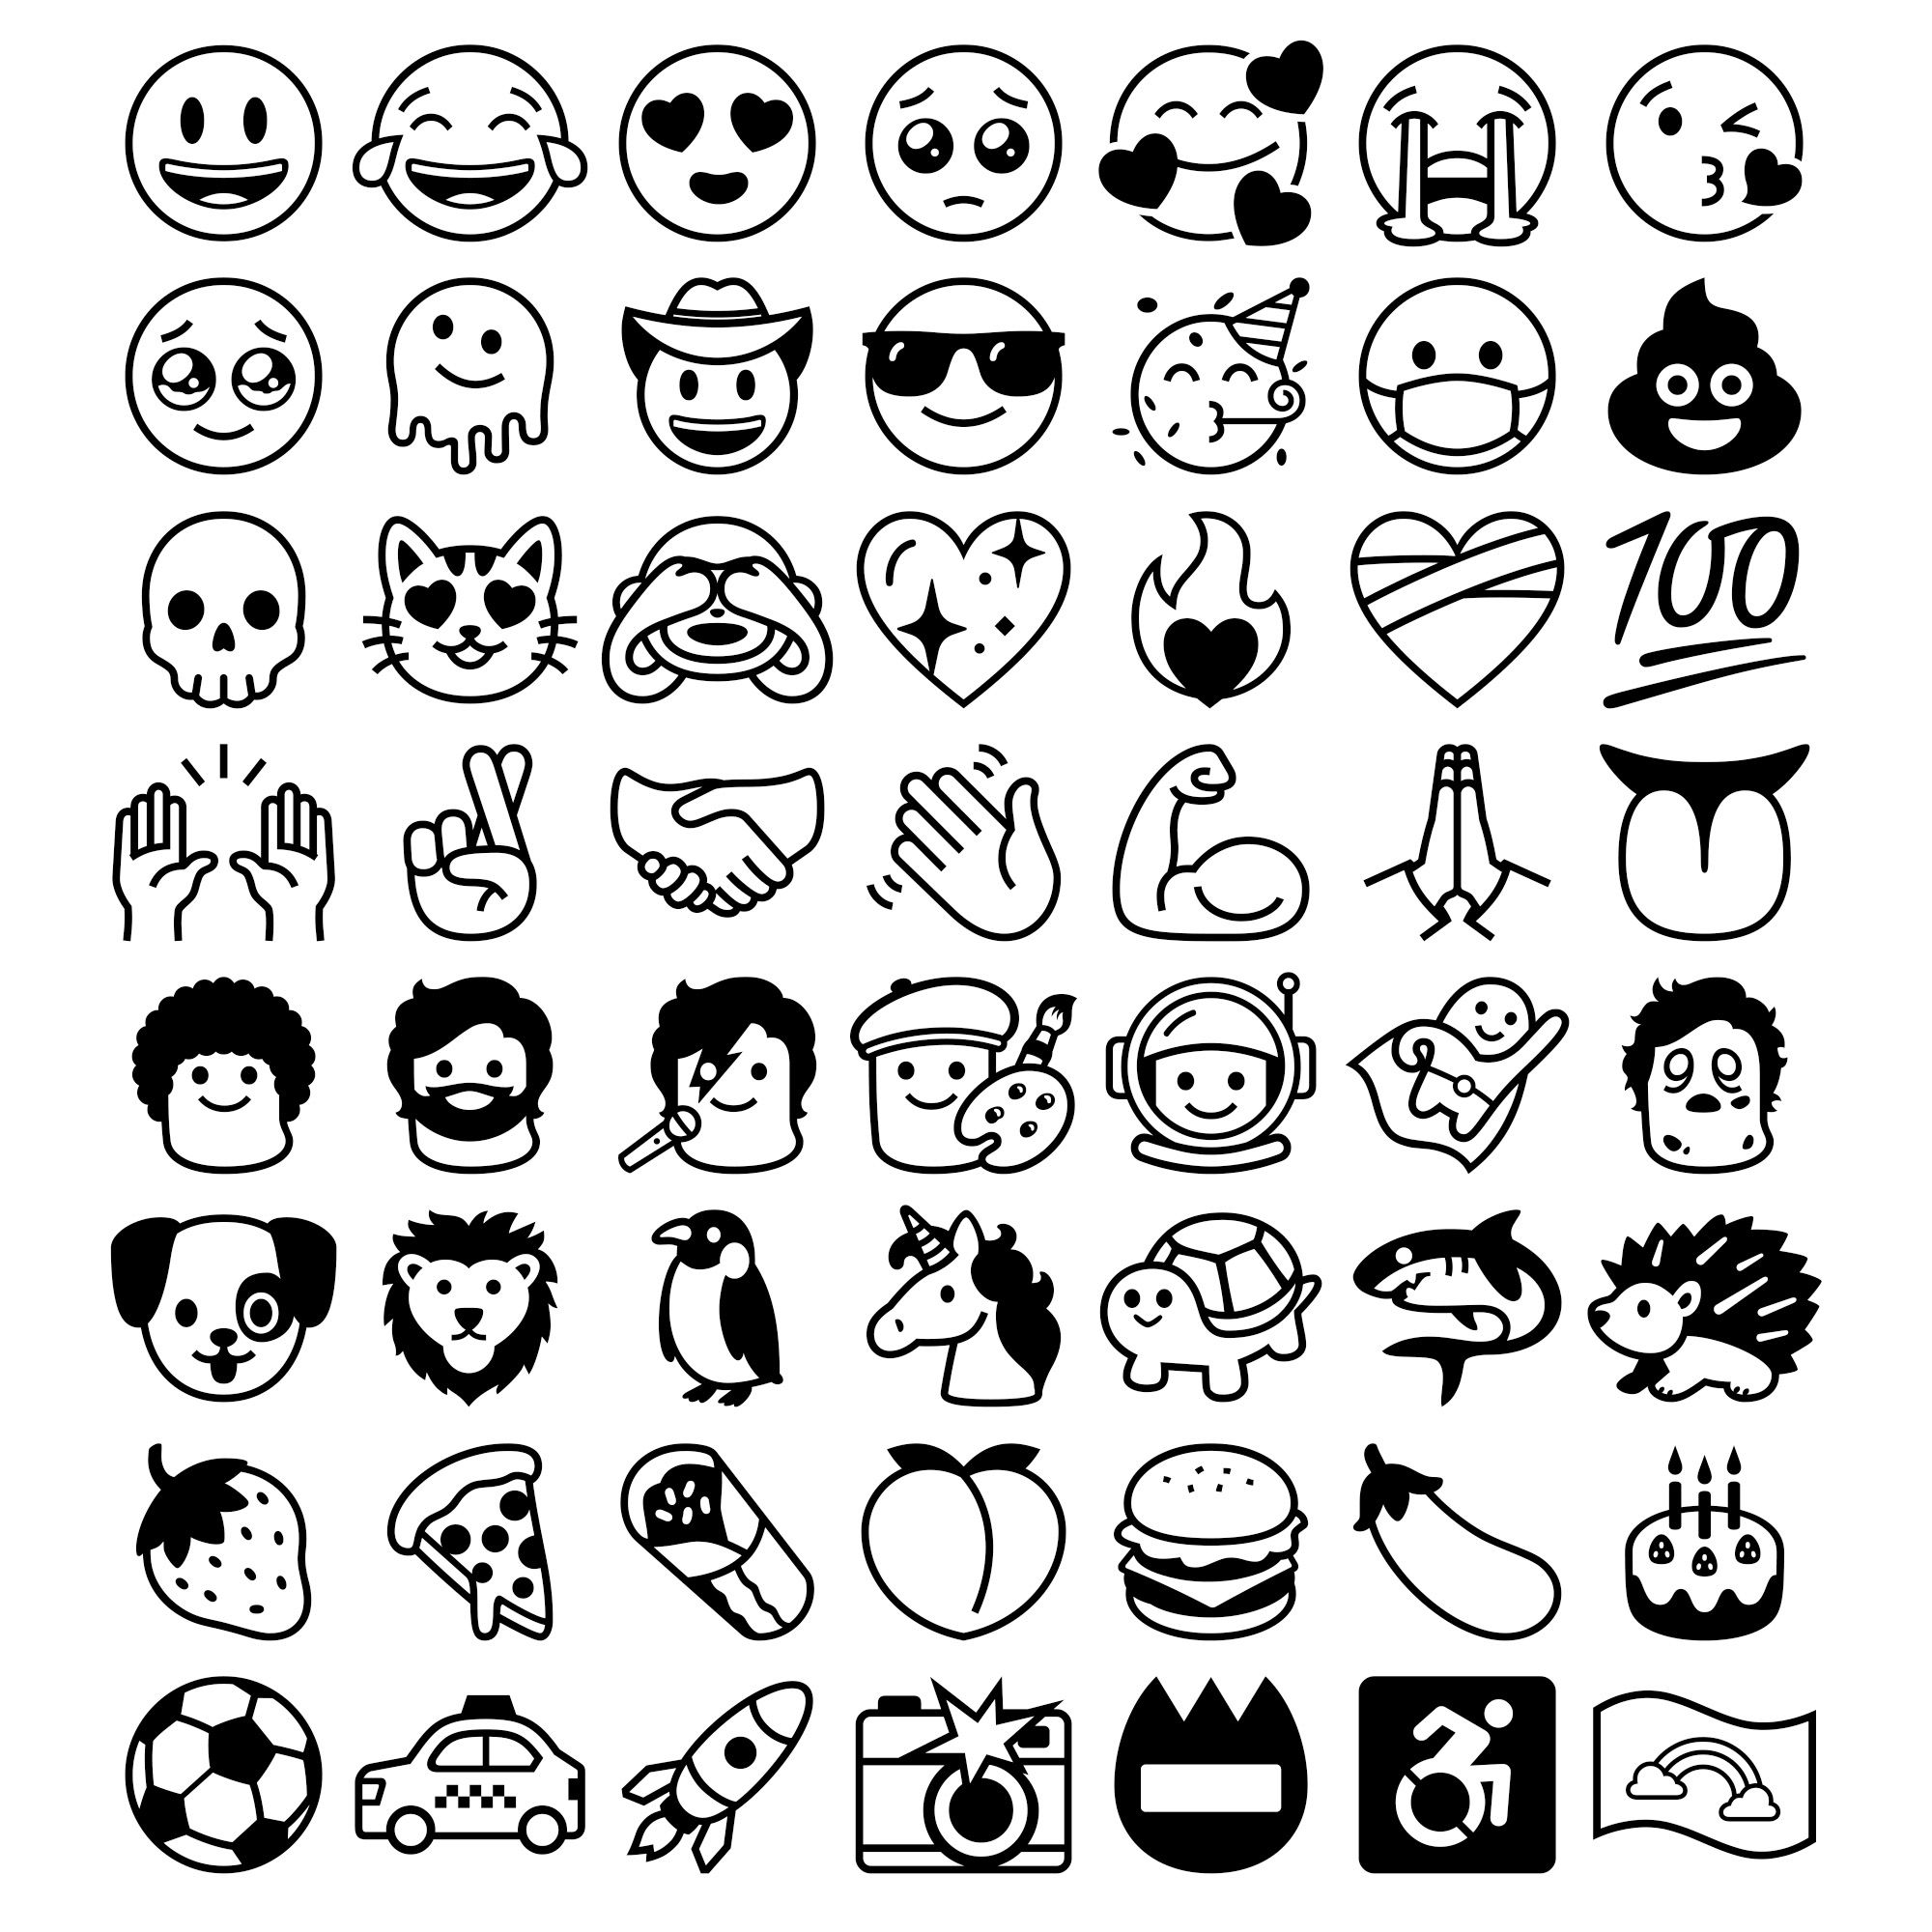 Google vừa ra mắt một font chữ emoji đen và nổi bật mới, mang đến cho người dùng trải nghiệm độc đáo và khác biệt. Với hình ảnh emoji đầy cá tính và sáng tạo, font chữ này không chỉ giúp bạn thể hiện tốt hơn cảm xúc của mình, mà còn khiến bạn trở nên độc đáo và nổi bật hơn trong mắt mọi người.